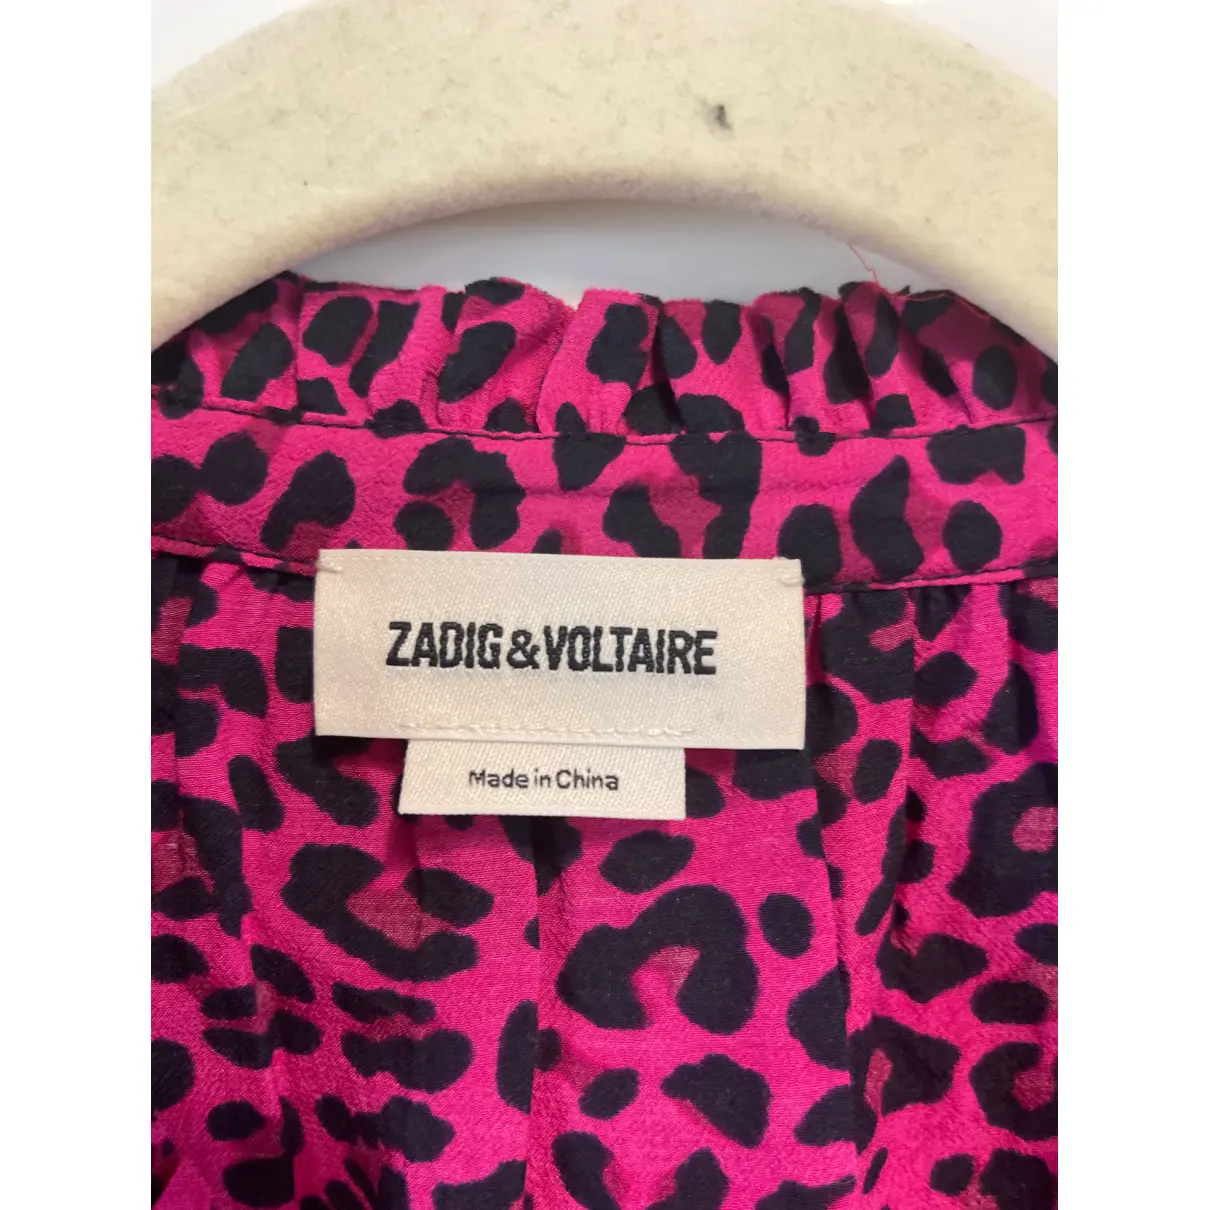 Buy Zadig & Voltaire Silk blouse online